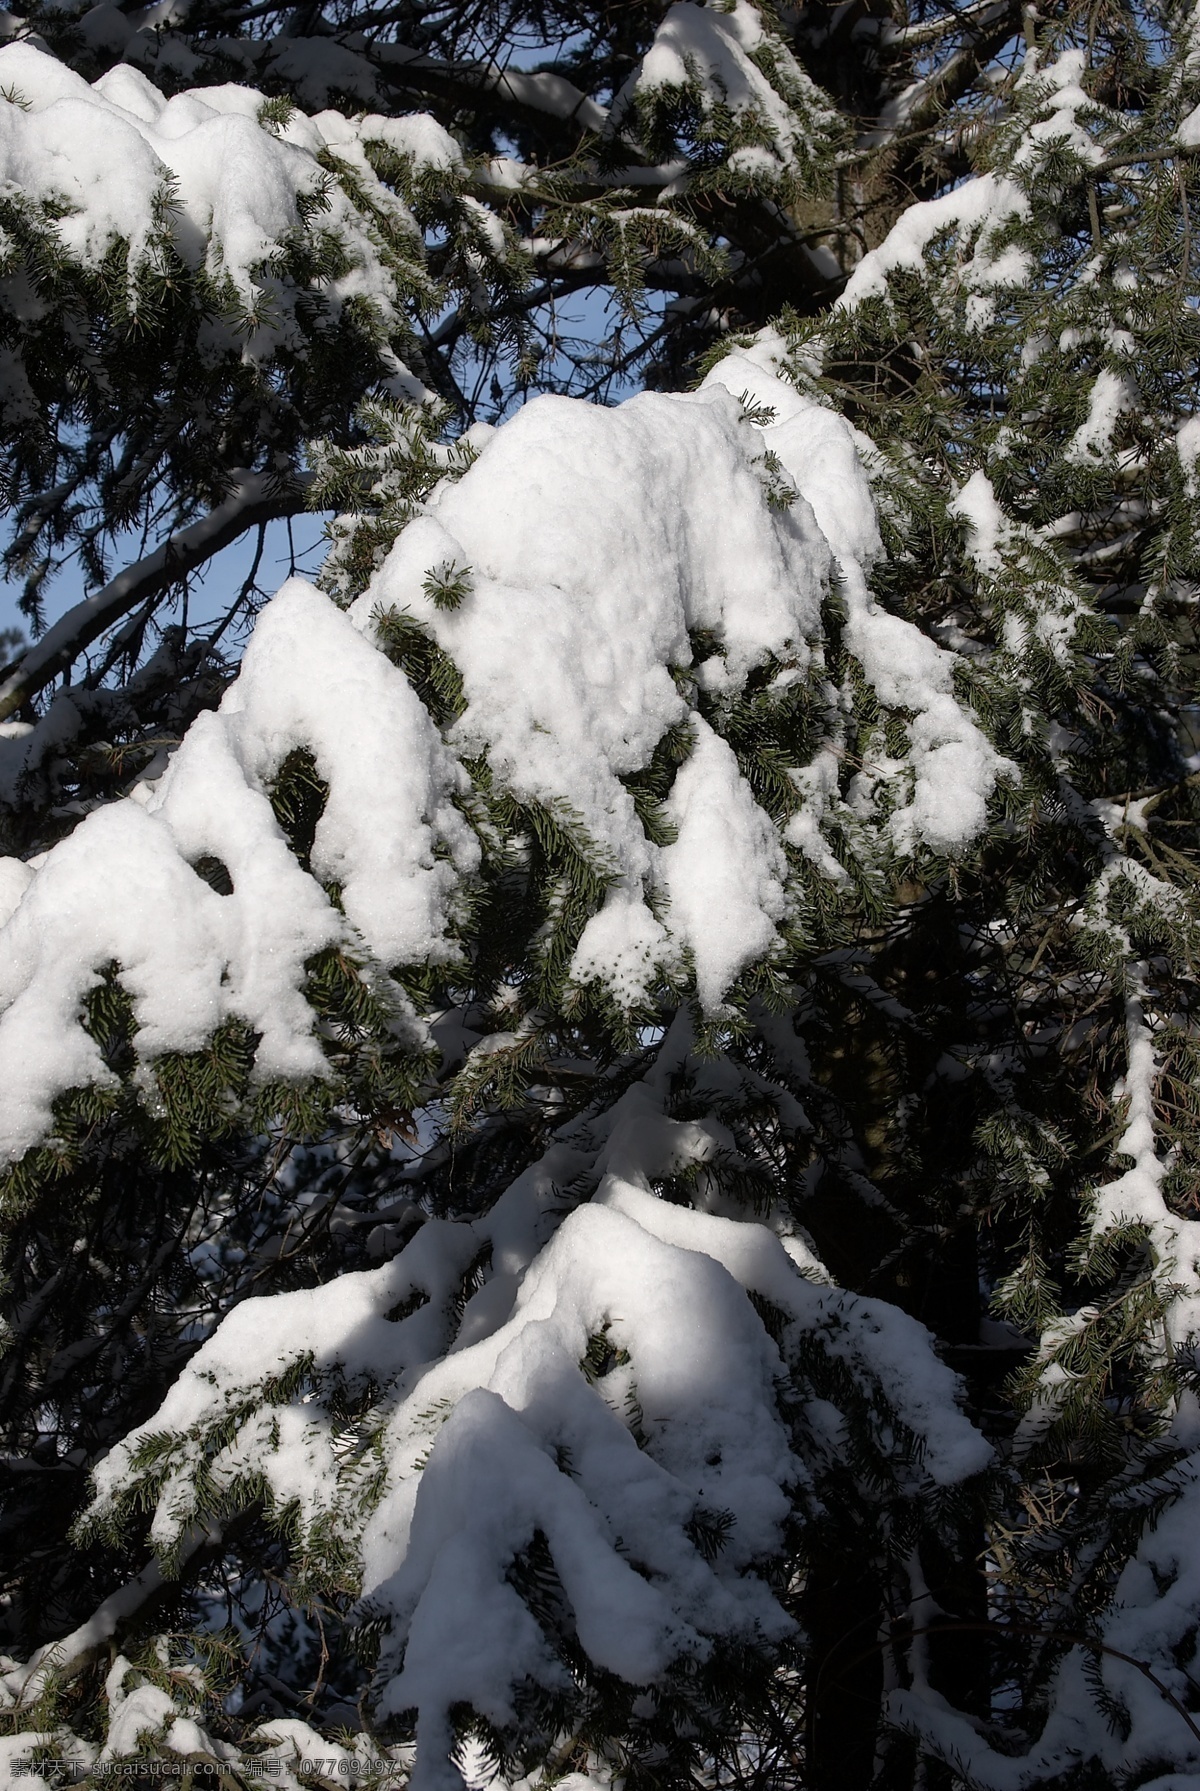 树上 白雪 冬天雪景 冬季 美丽风景 美丽雪景 积雪 风景摄影 树木 树林 山水风景 风景图片